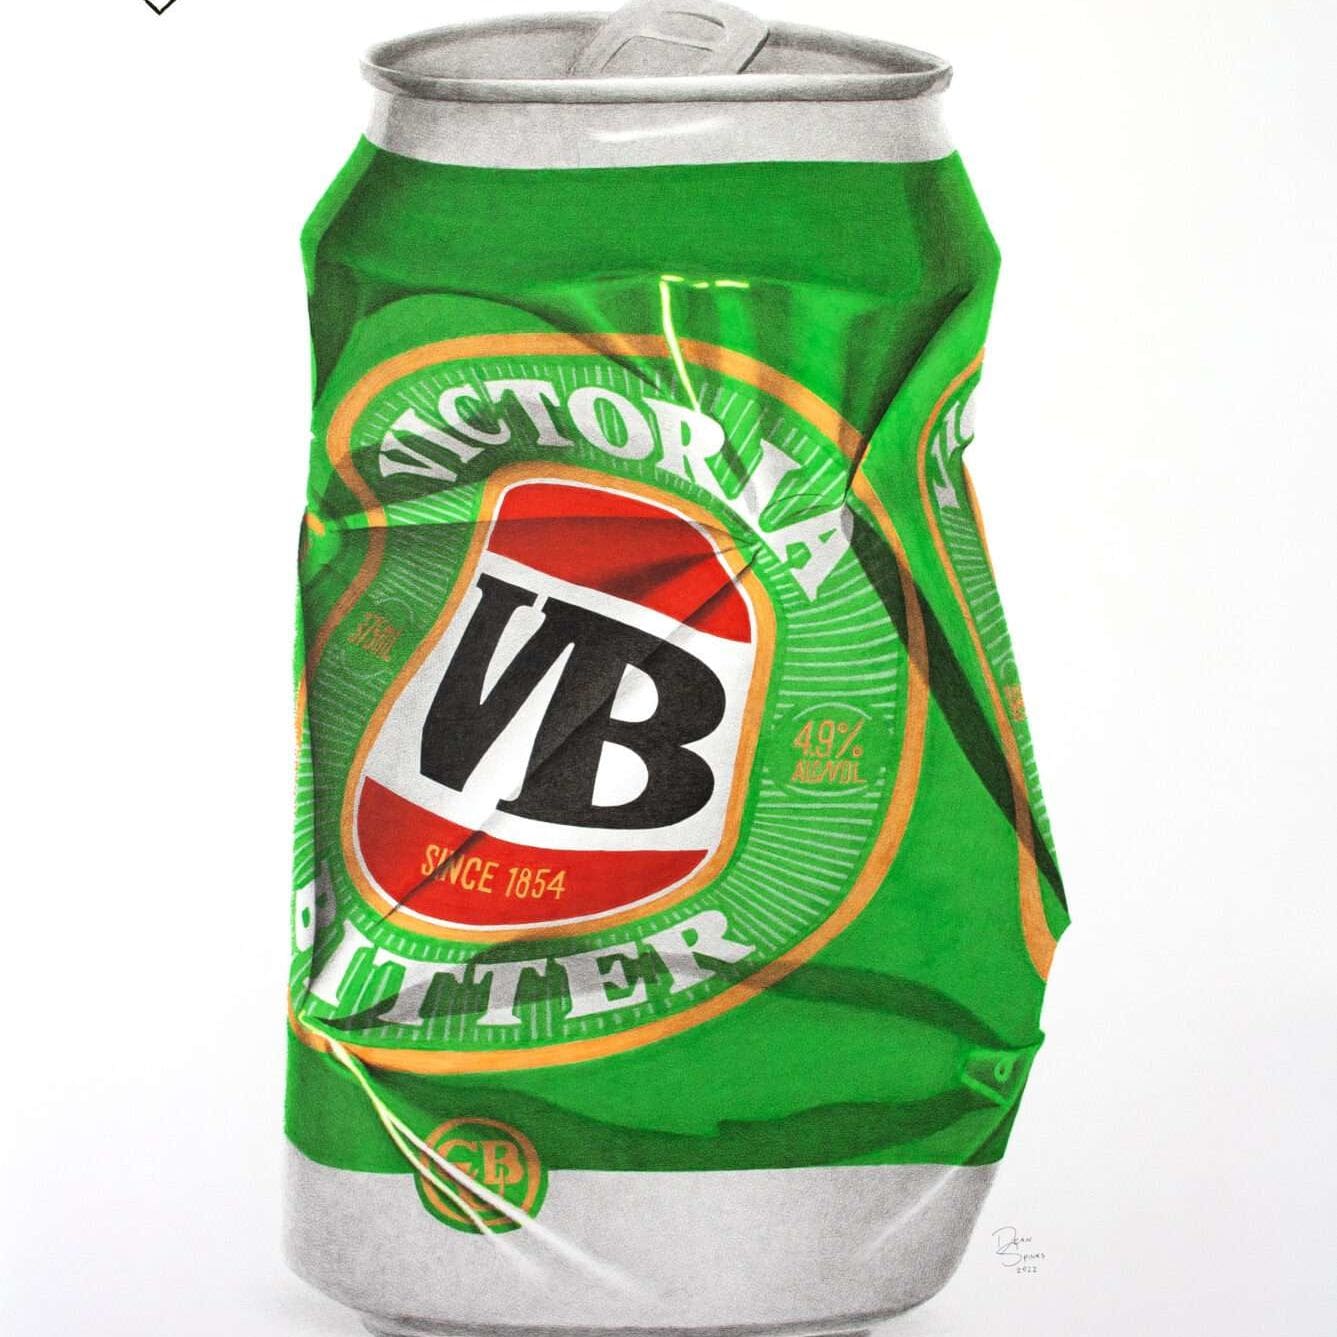 VB beer can photorealistic drawing art print